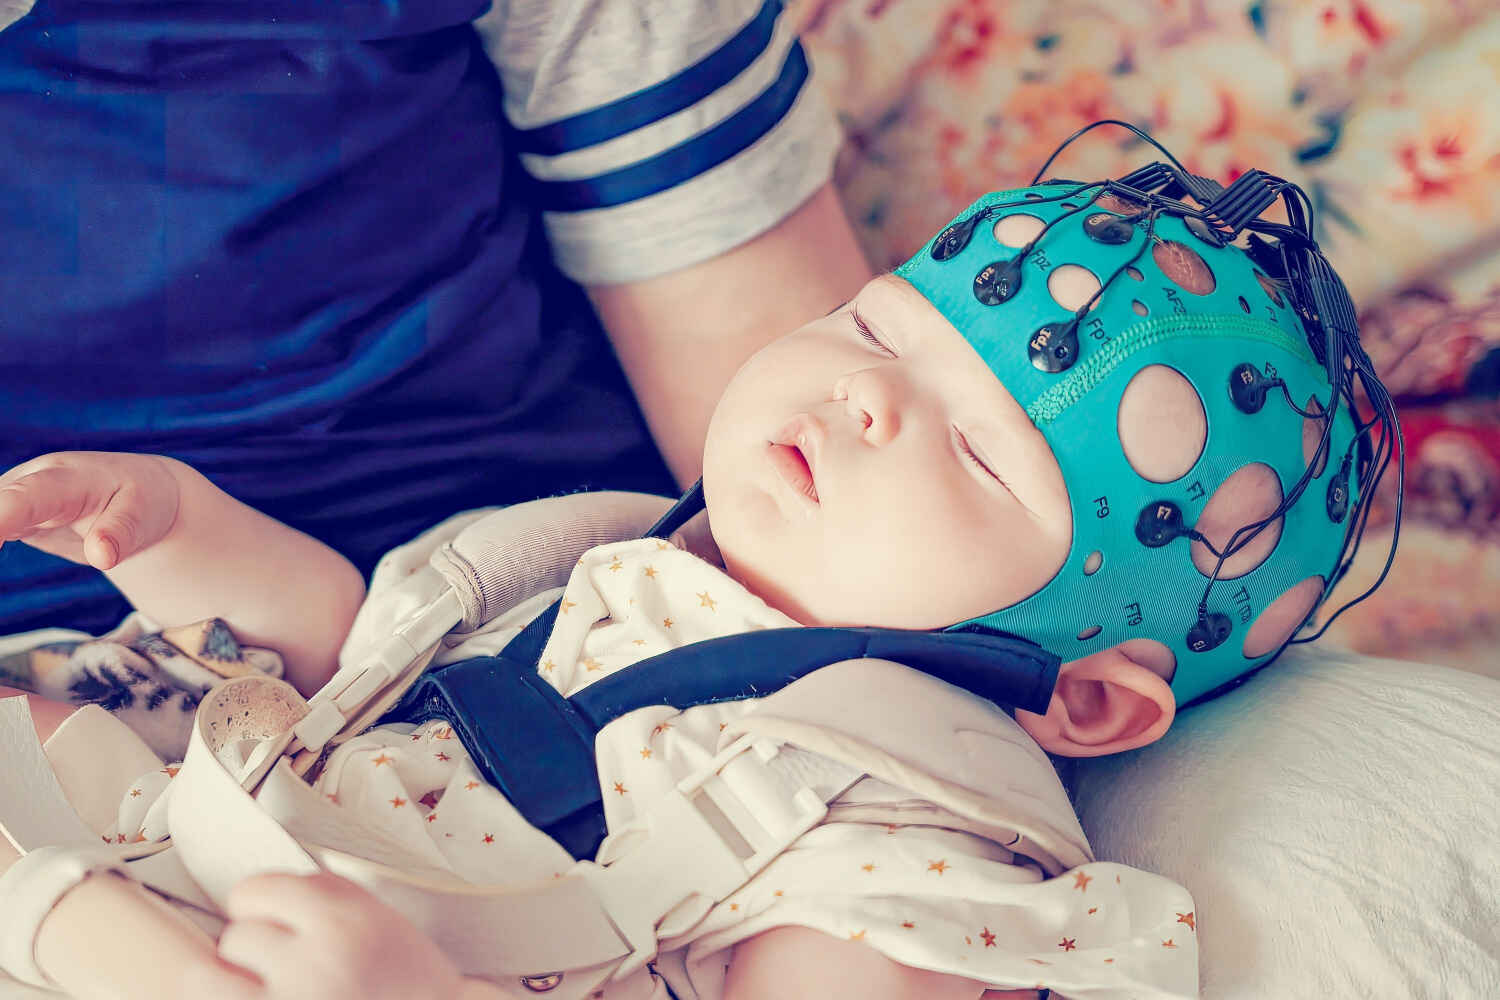 The baby's EEG is in progress